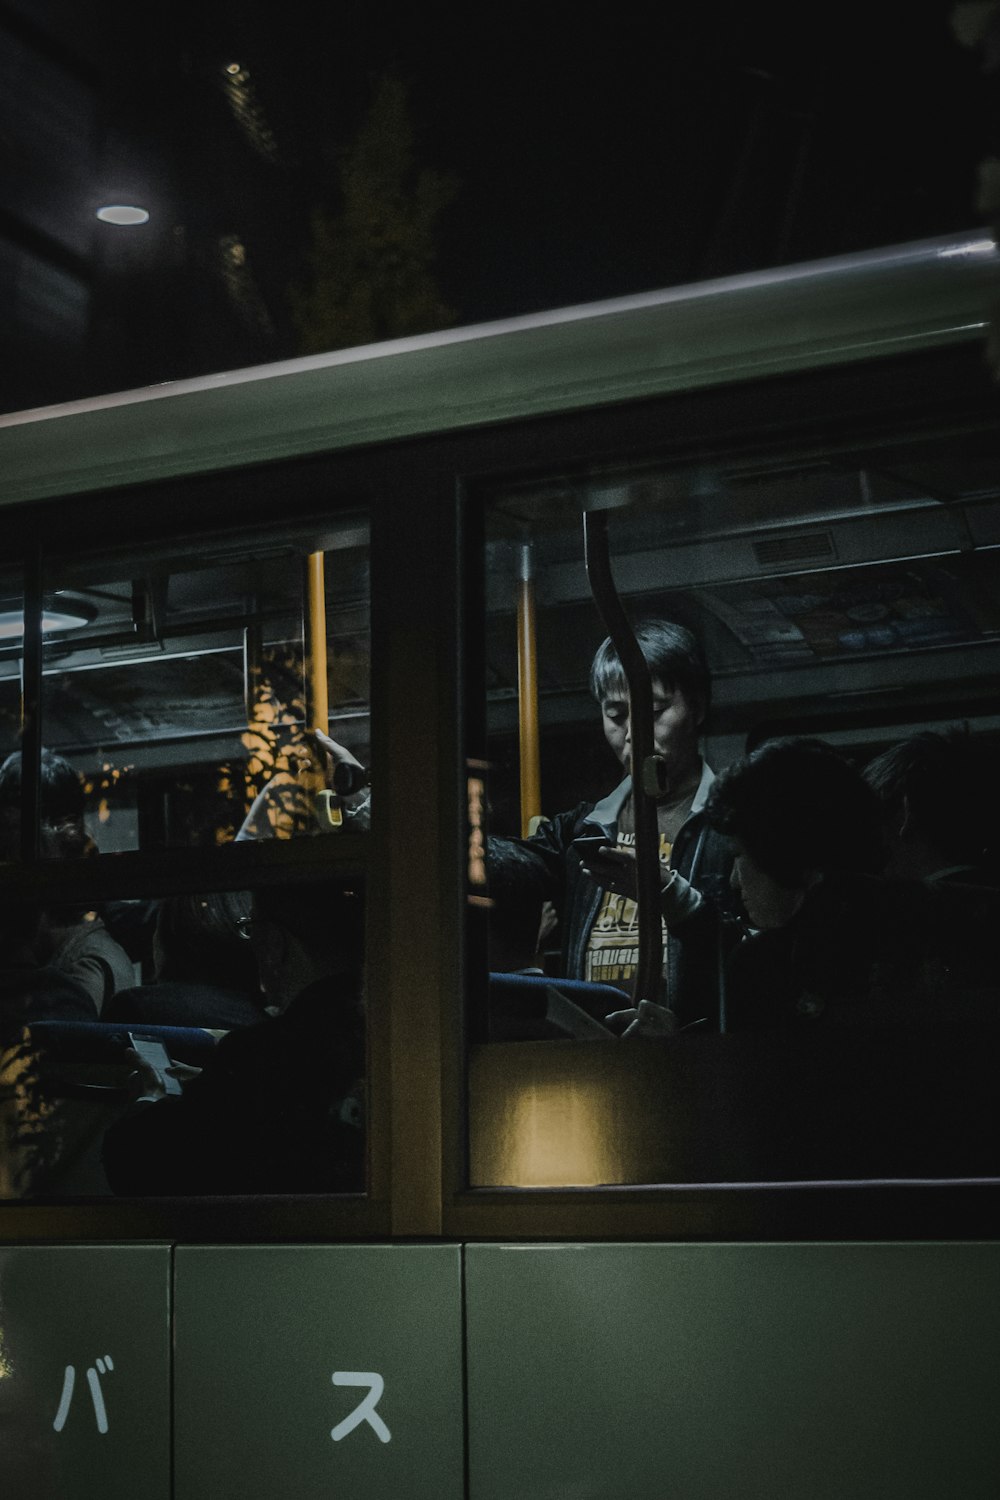 personne debout à l’intérieur du train tout en utilisant un smartphone devant une fenêtre en verre transparent